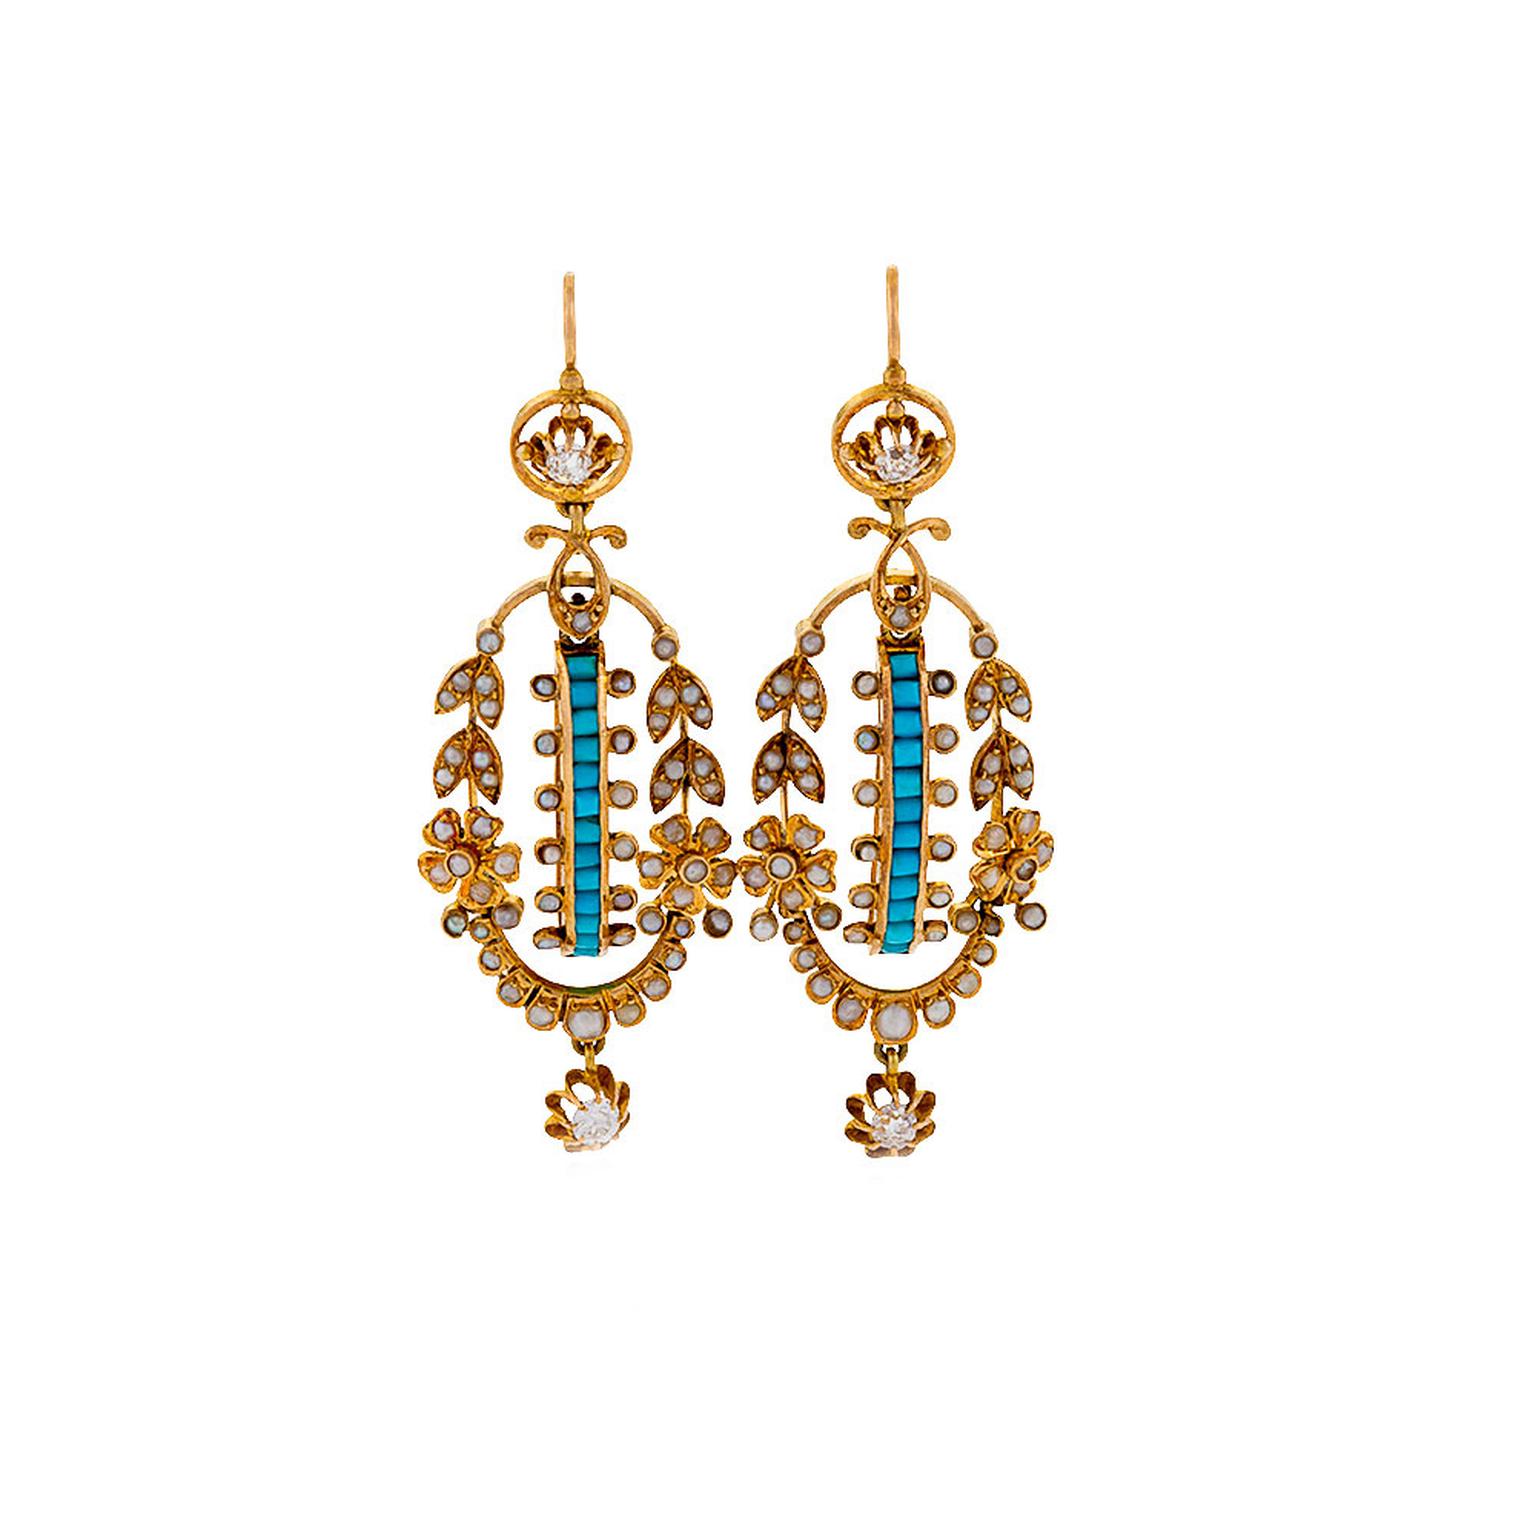 Macklowe Gallery turquoise seed pearl earrings